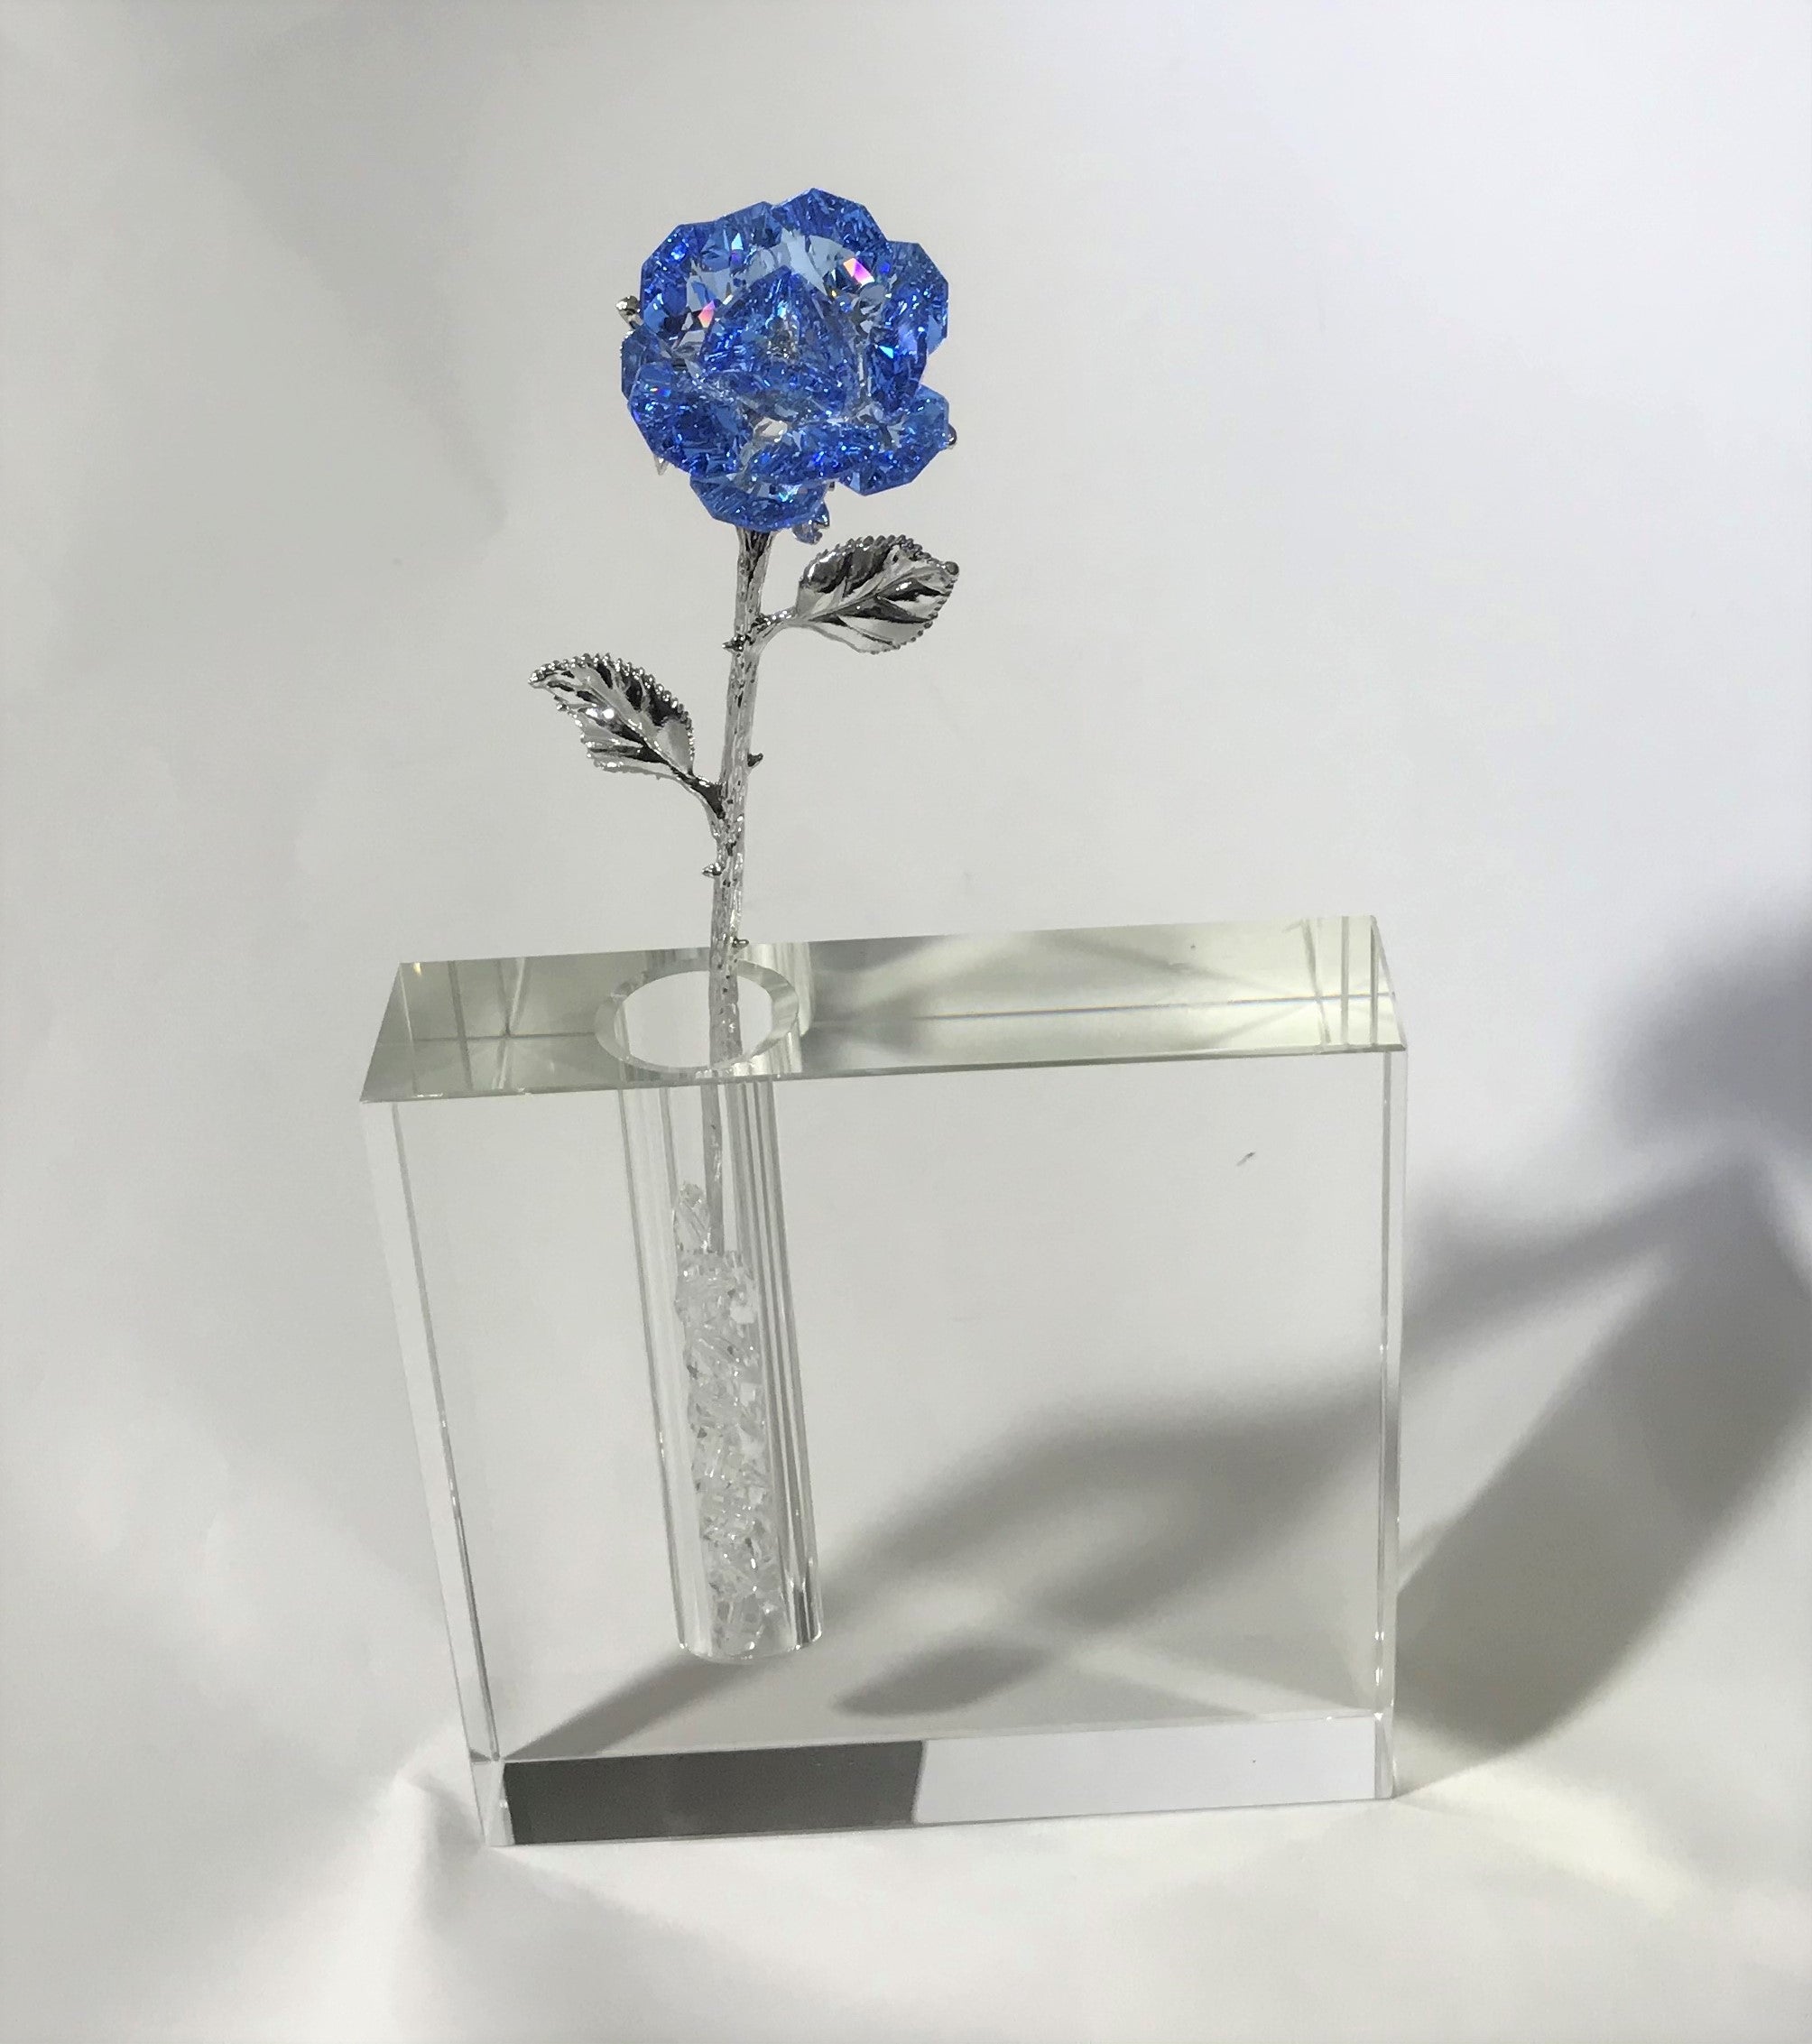 Long Stem Blue Crystal Rose In Crystal Vase - Blue Crystal Flower In Crystal Vase - Rose Centerpiece